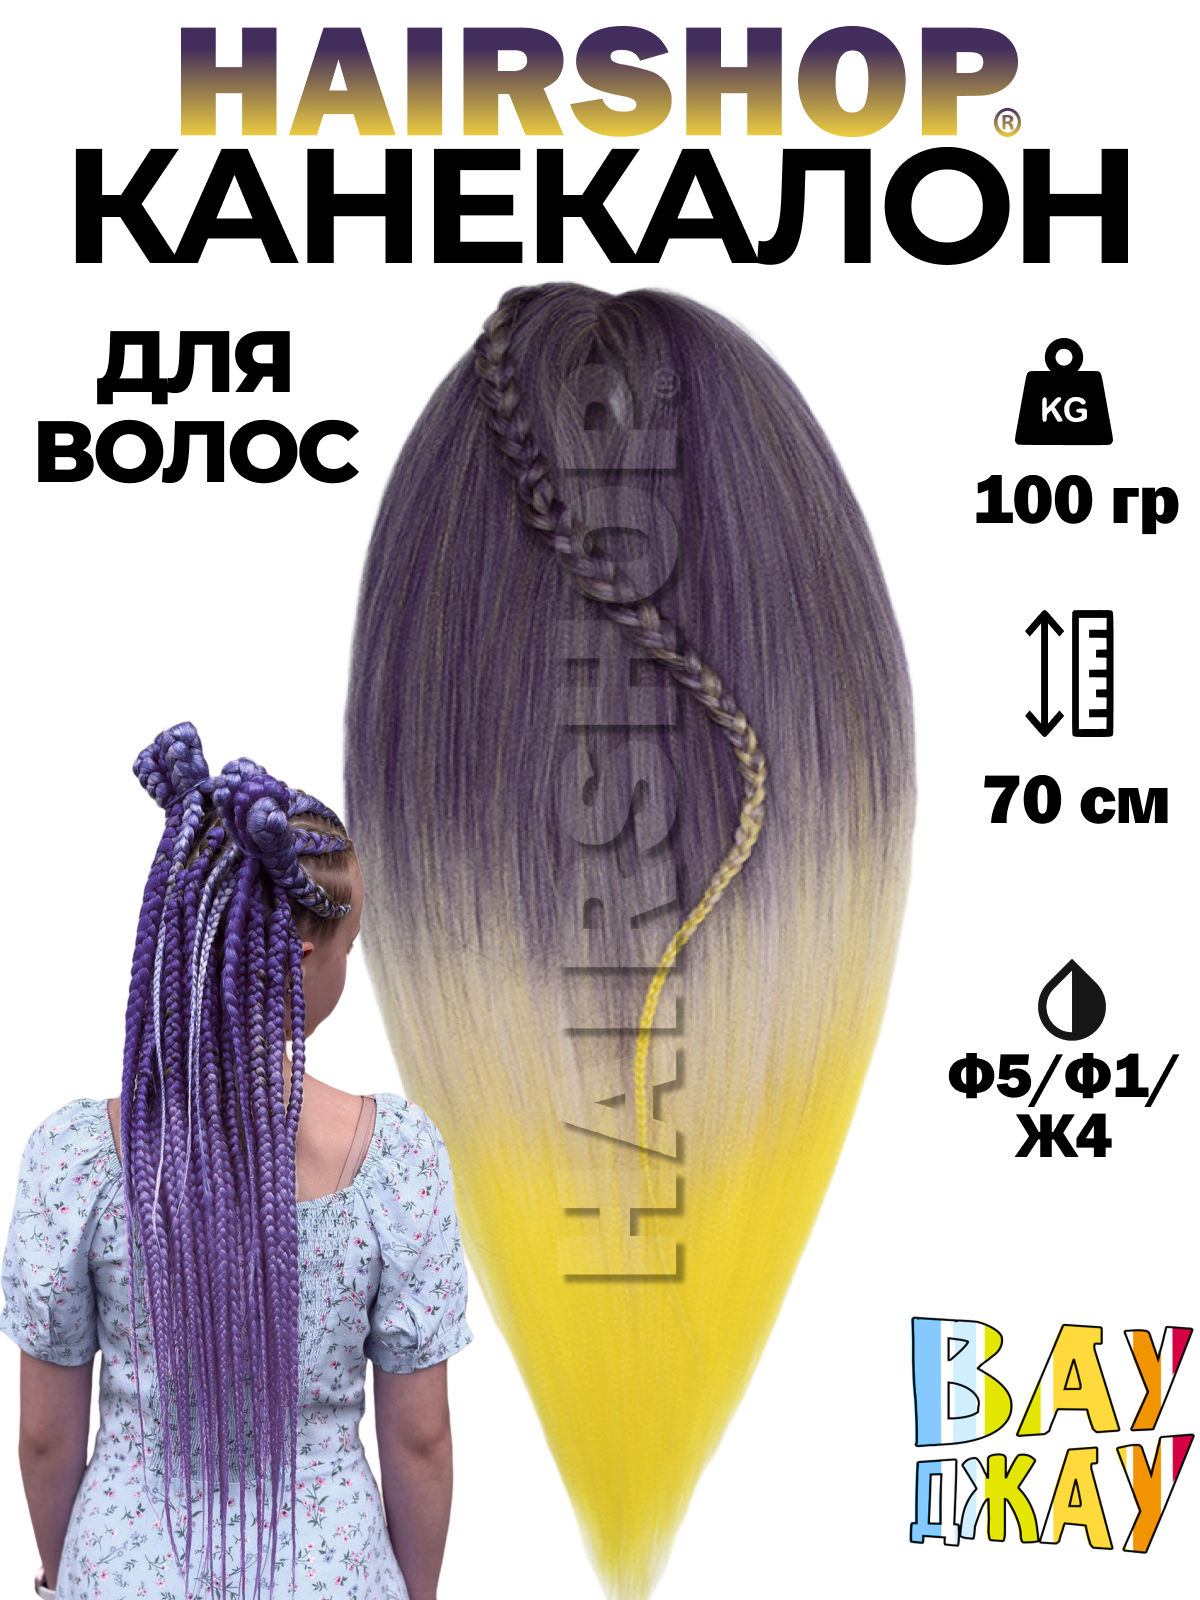 Канекалон HAIRSHOP Вау Джау Ф5-Ф1-Ж4 1,3м 100г Фиолетово-баклажановый, Фиолетовый, Желтый